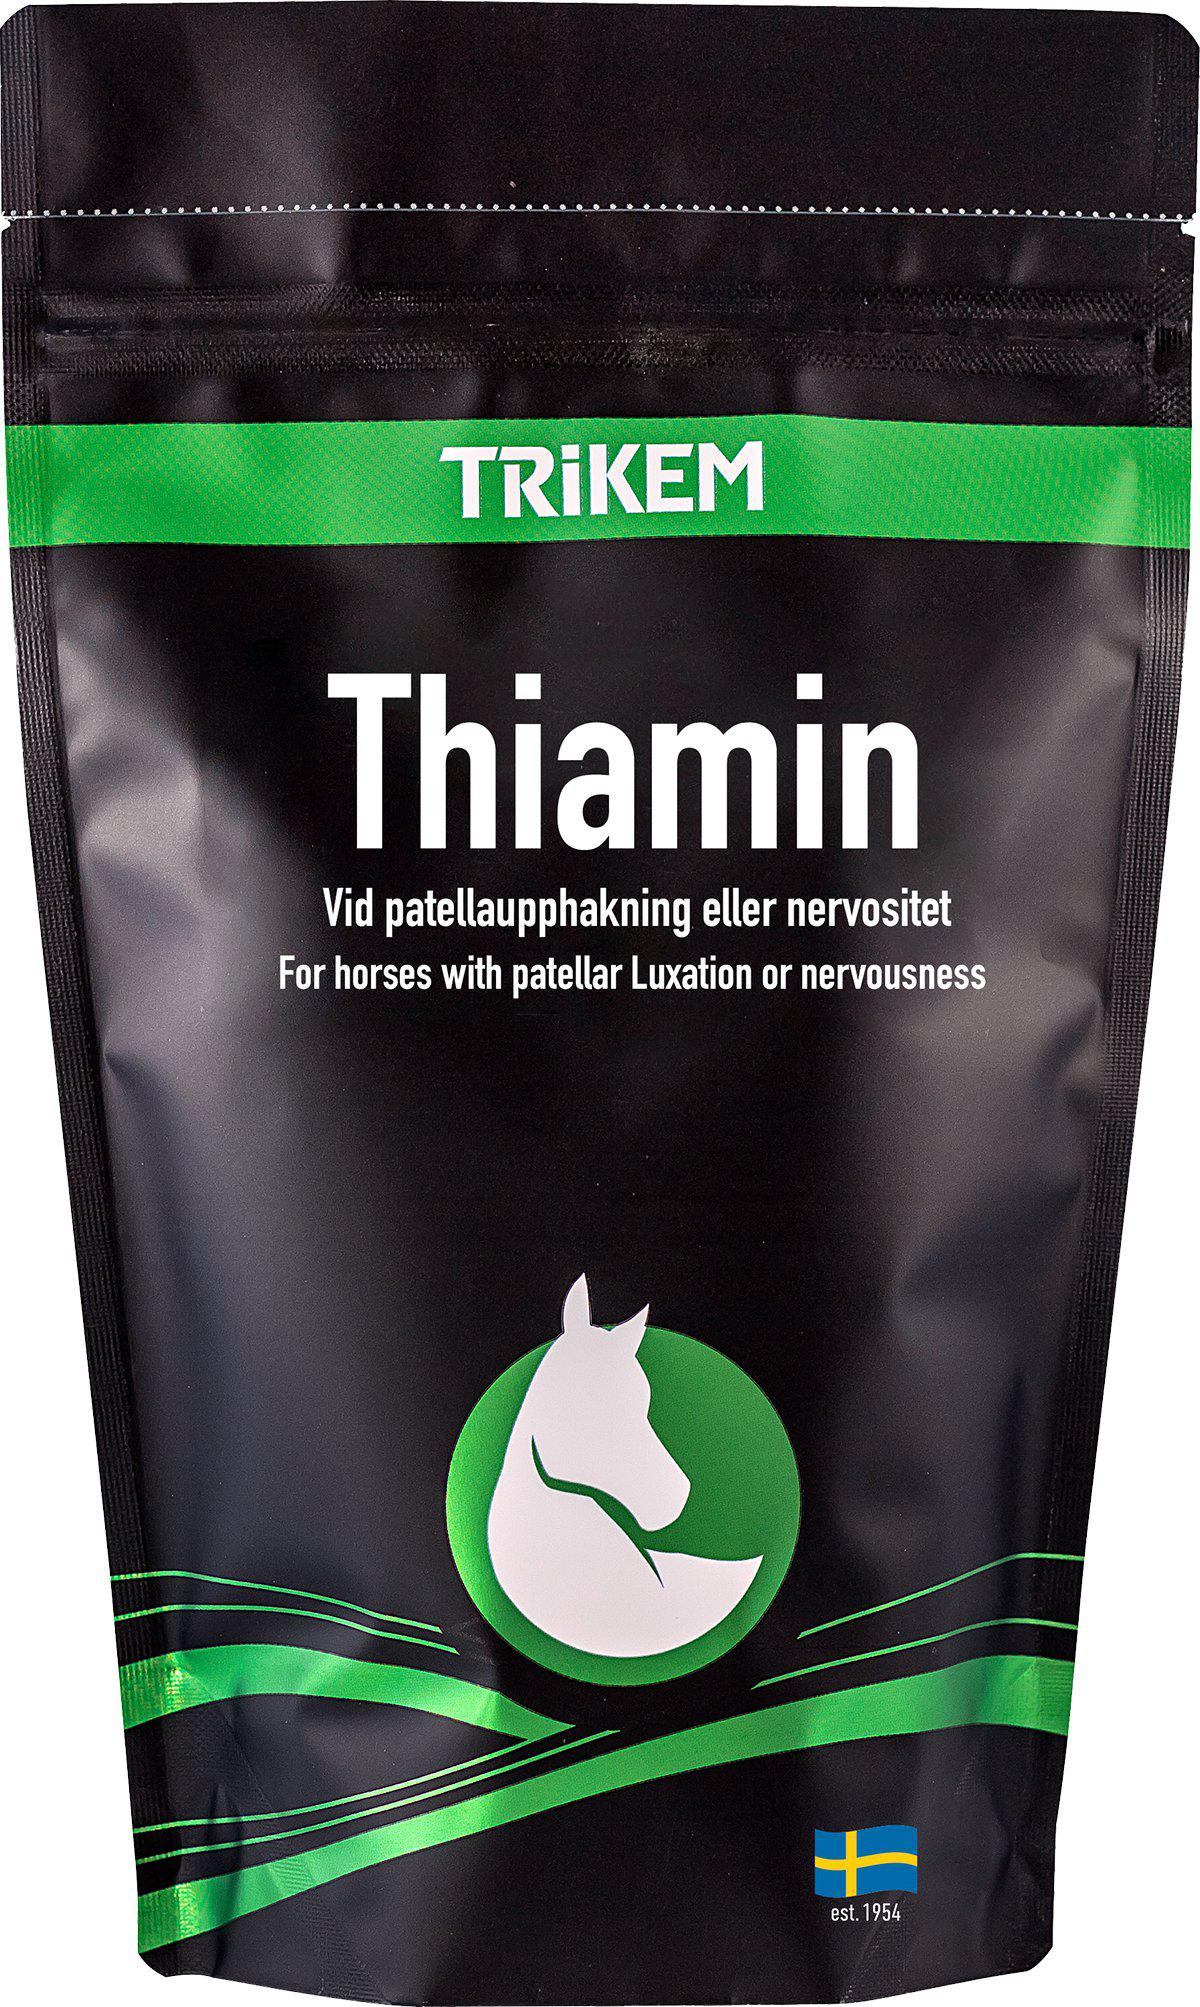 TRIKEM - Thiamin 500Gr - (822.7380) - Kjæledyr og utstyr